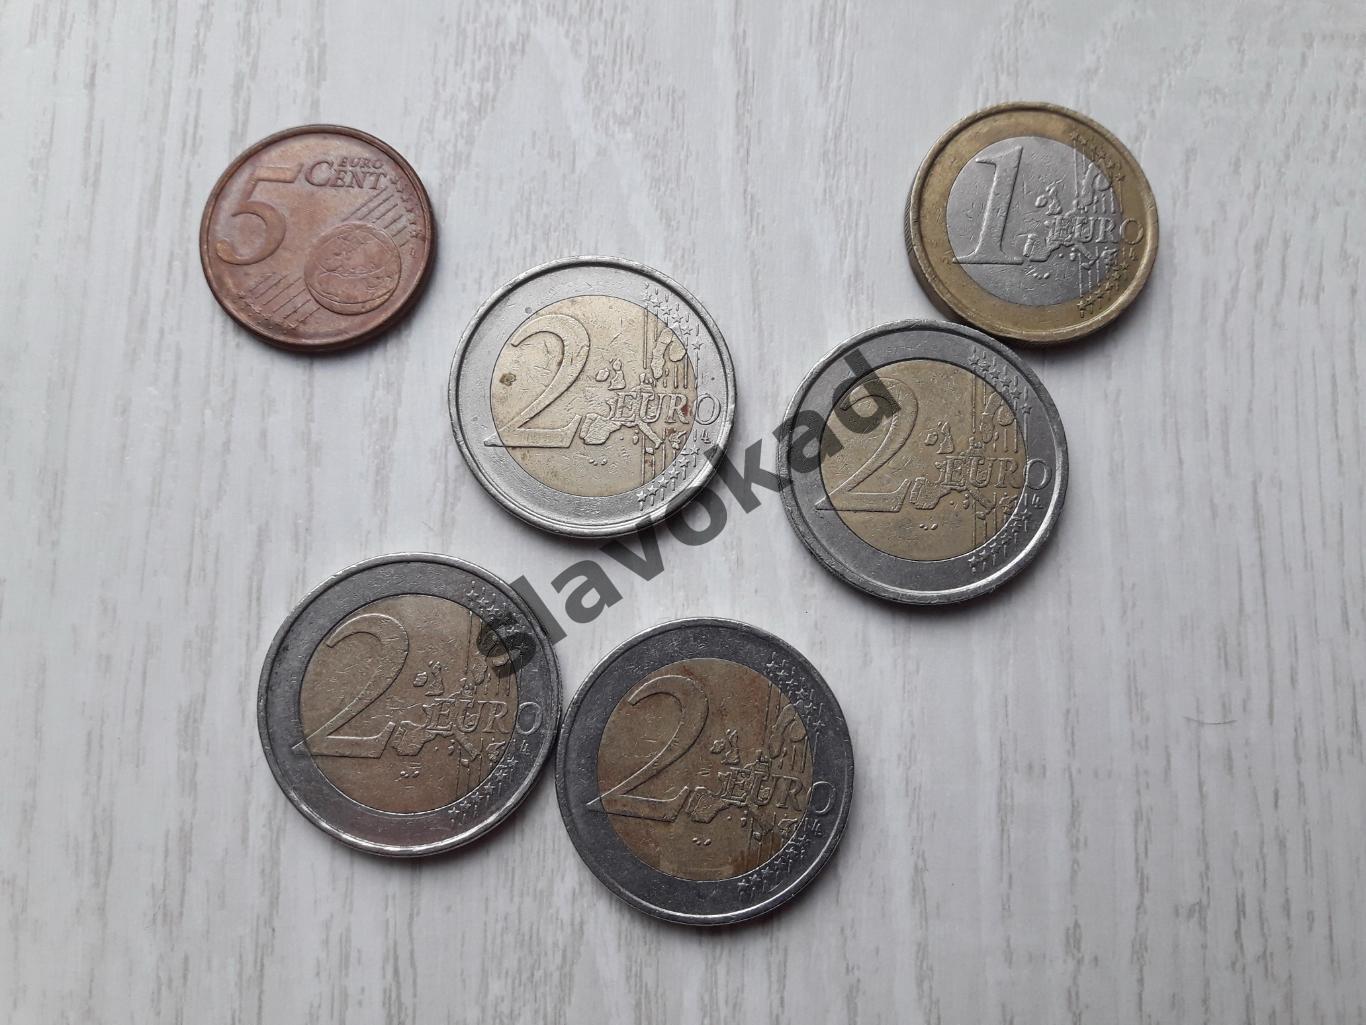 Коллекция из 6 монет - 2 евро (4 штуки), 1 евро (1 штука), 5 центов (1 штука)